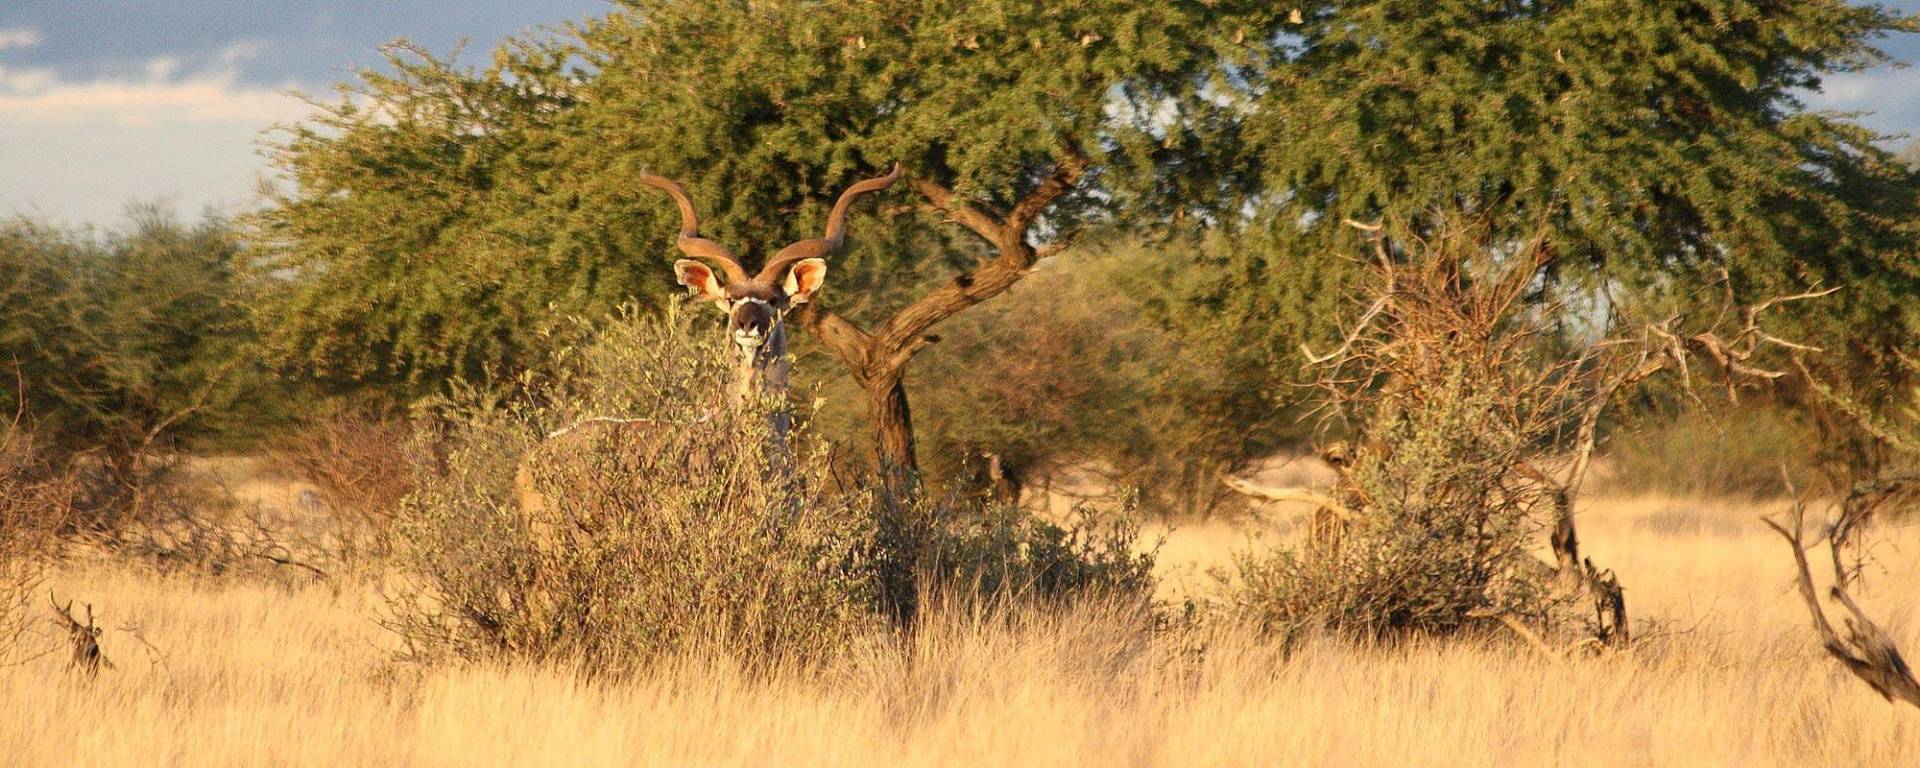 Ausgewachsener Kudu im Busch